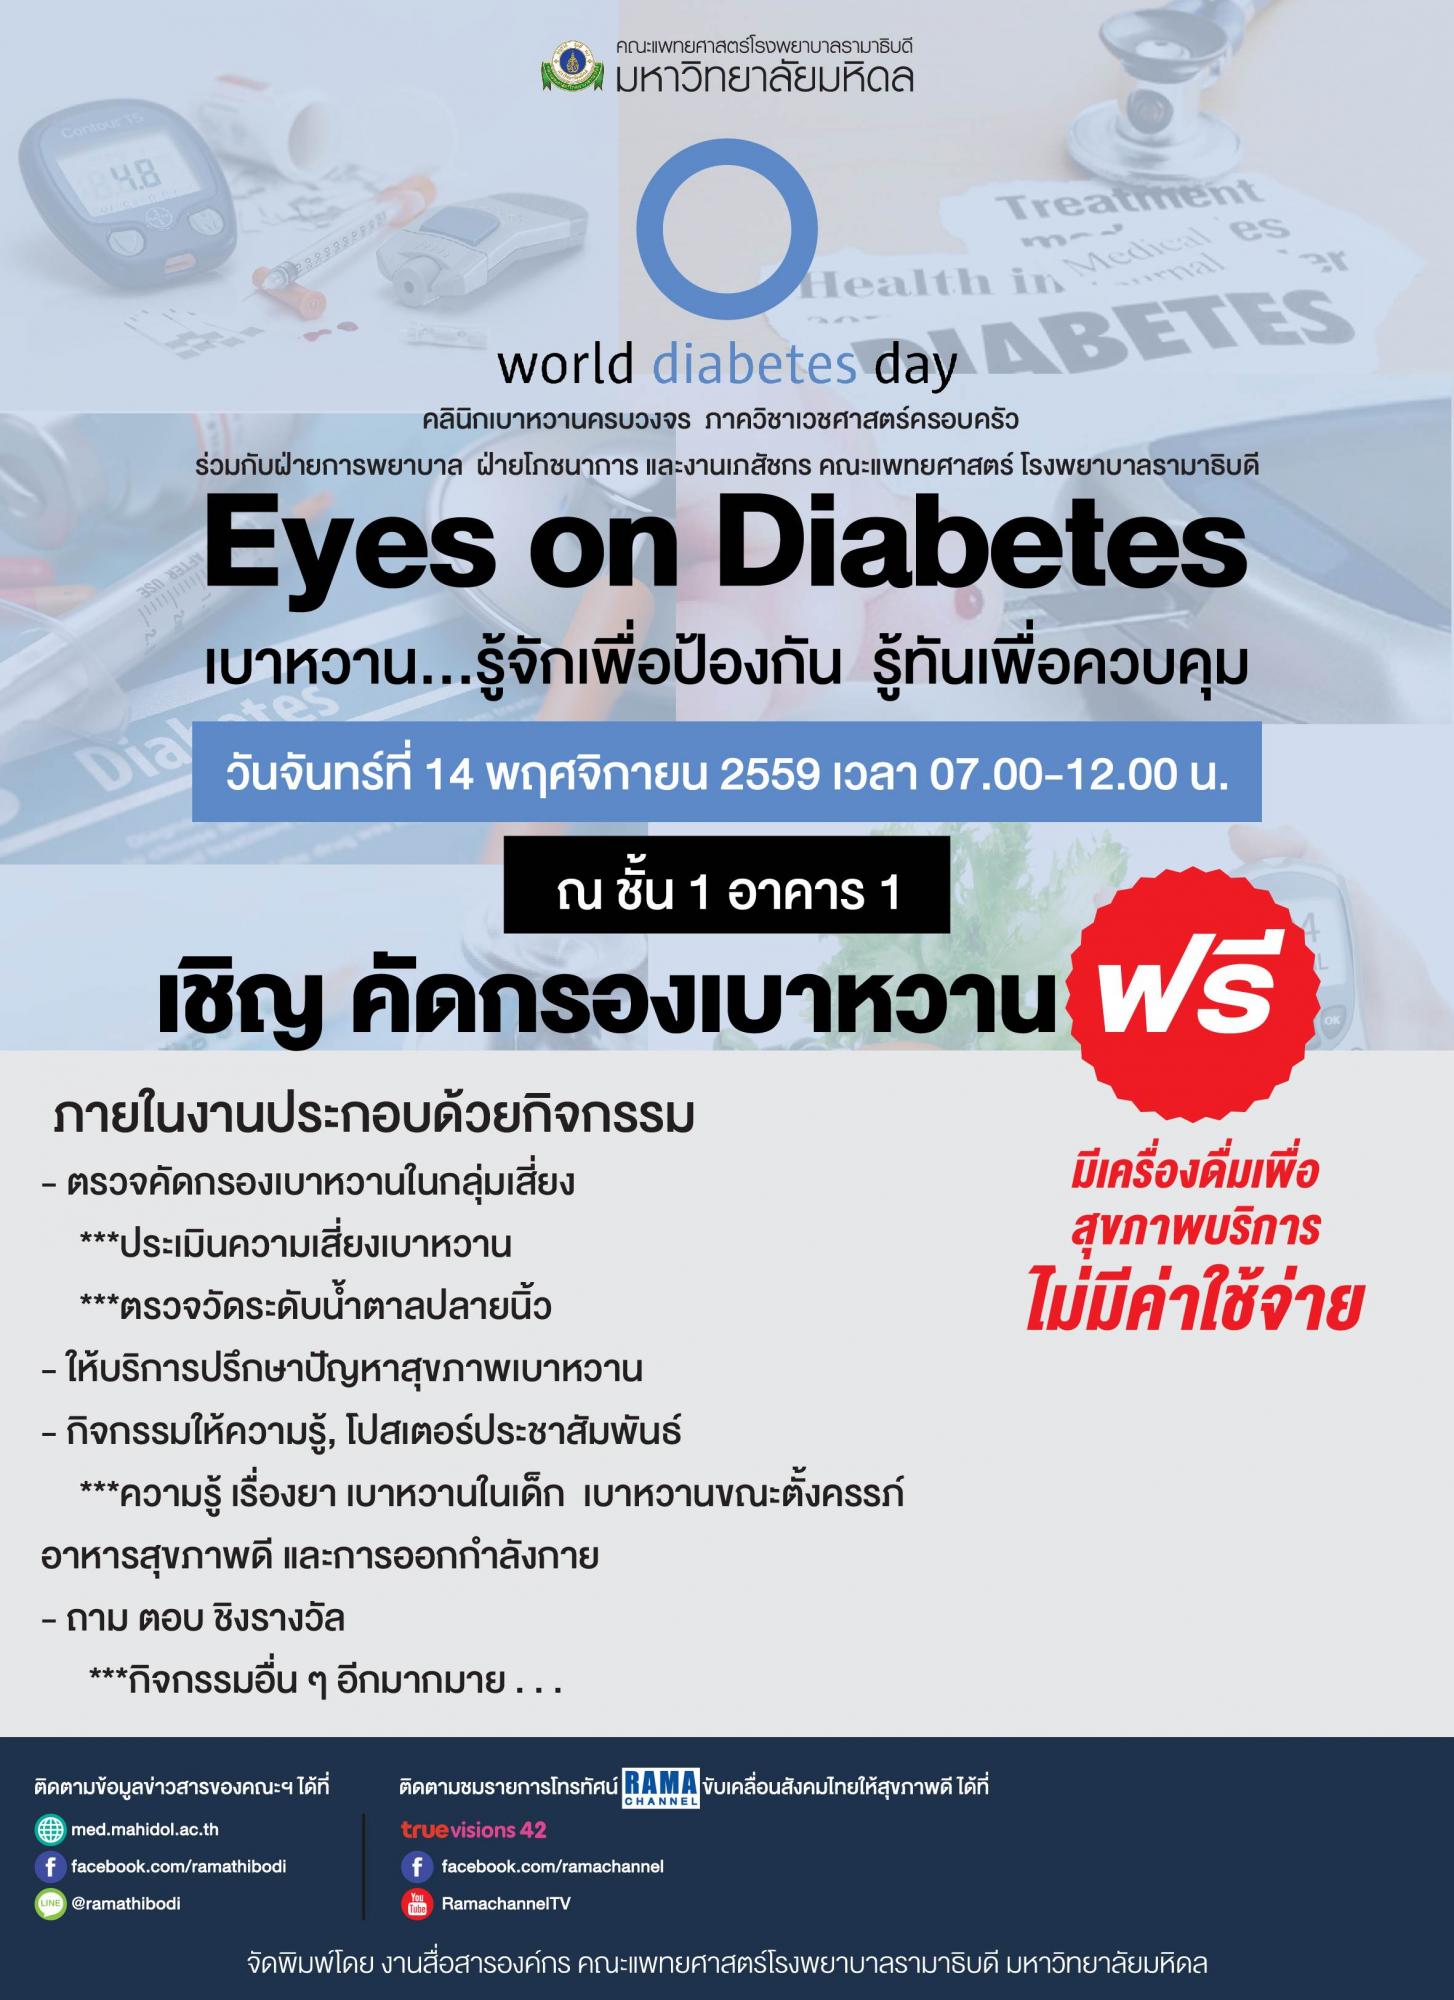 ขอเชิญร่วมงาน World diabetes day Eyes on Diabetes "เบาหวาน...รู้จักเพื่อป้องกัน รู้ทันเพื่อควบคุม"